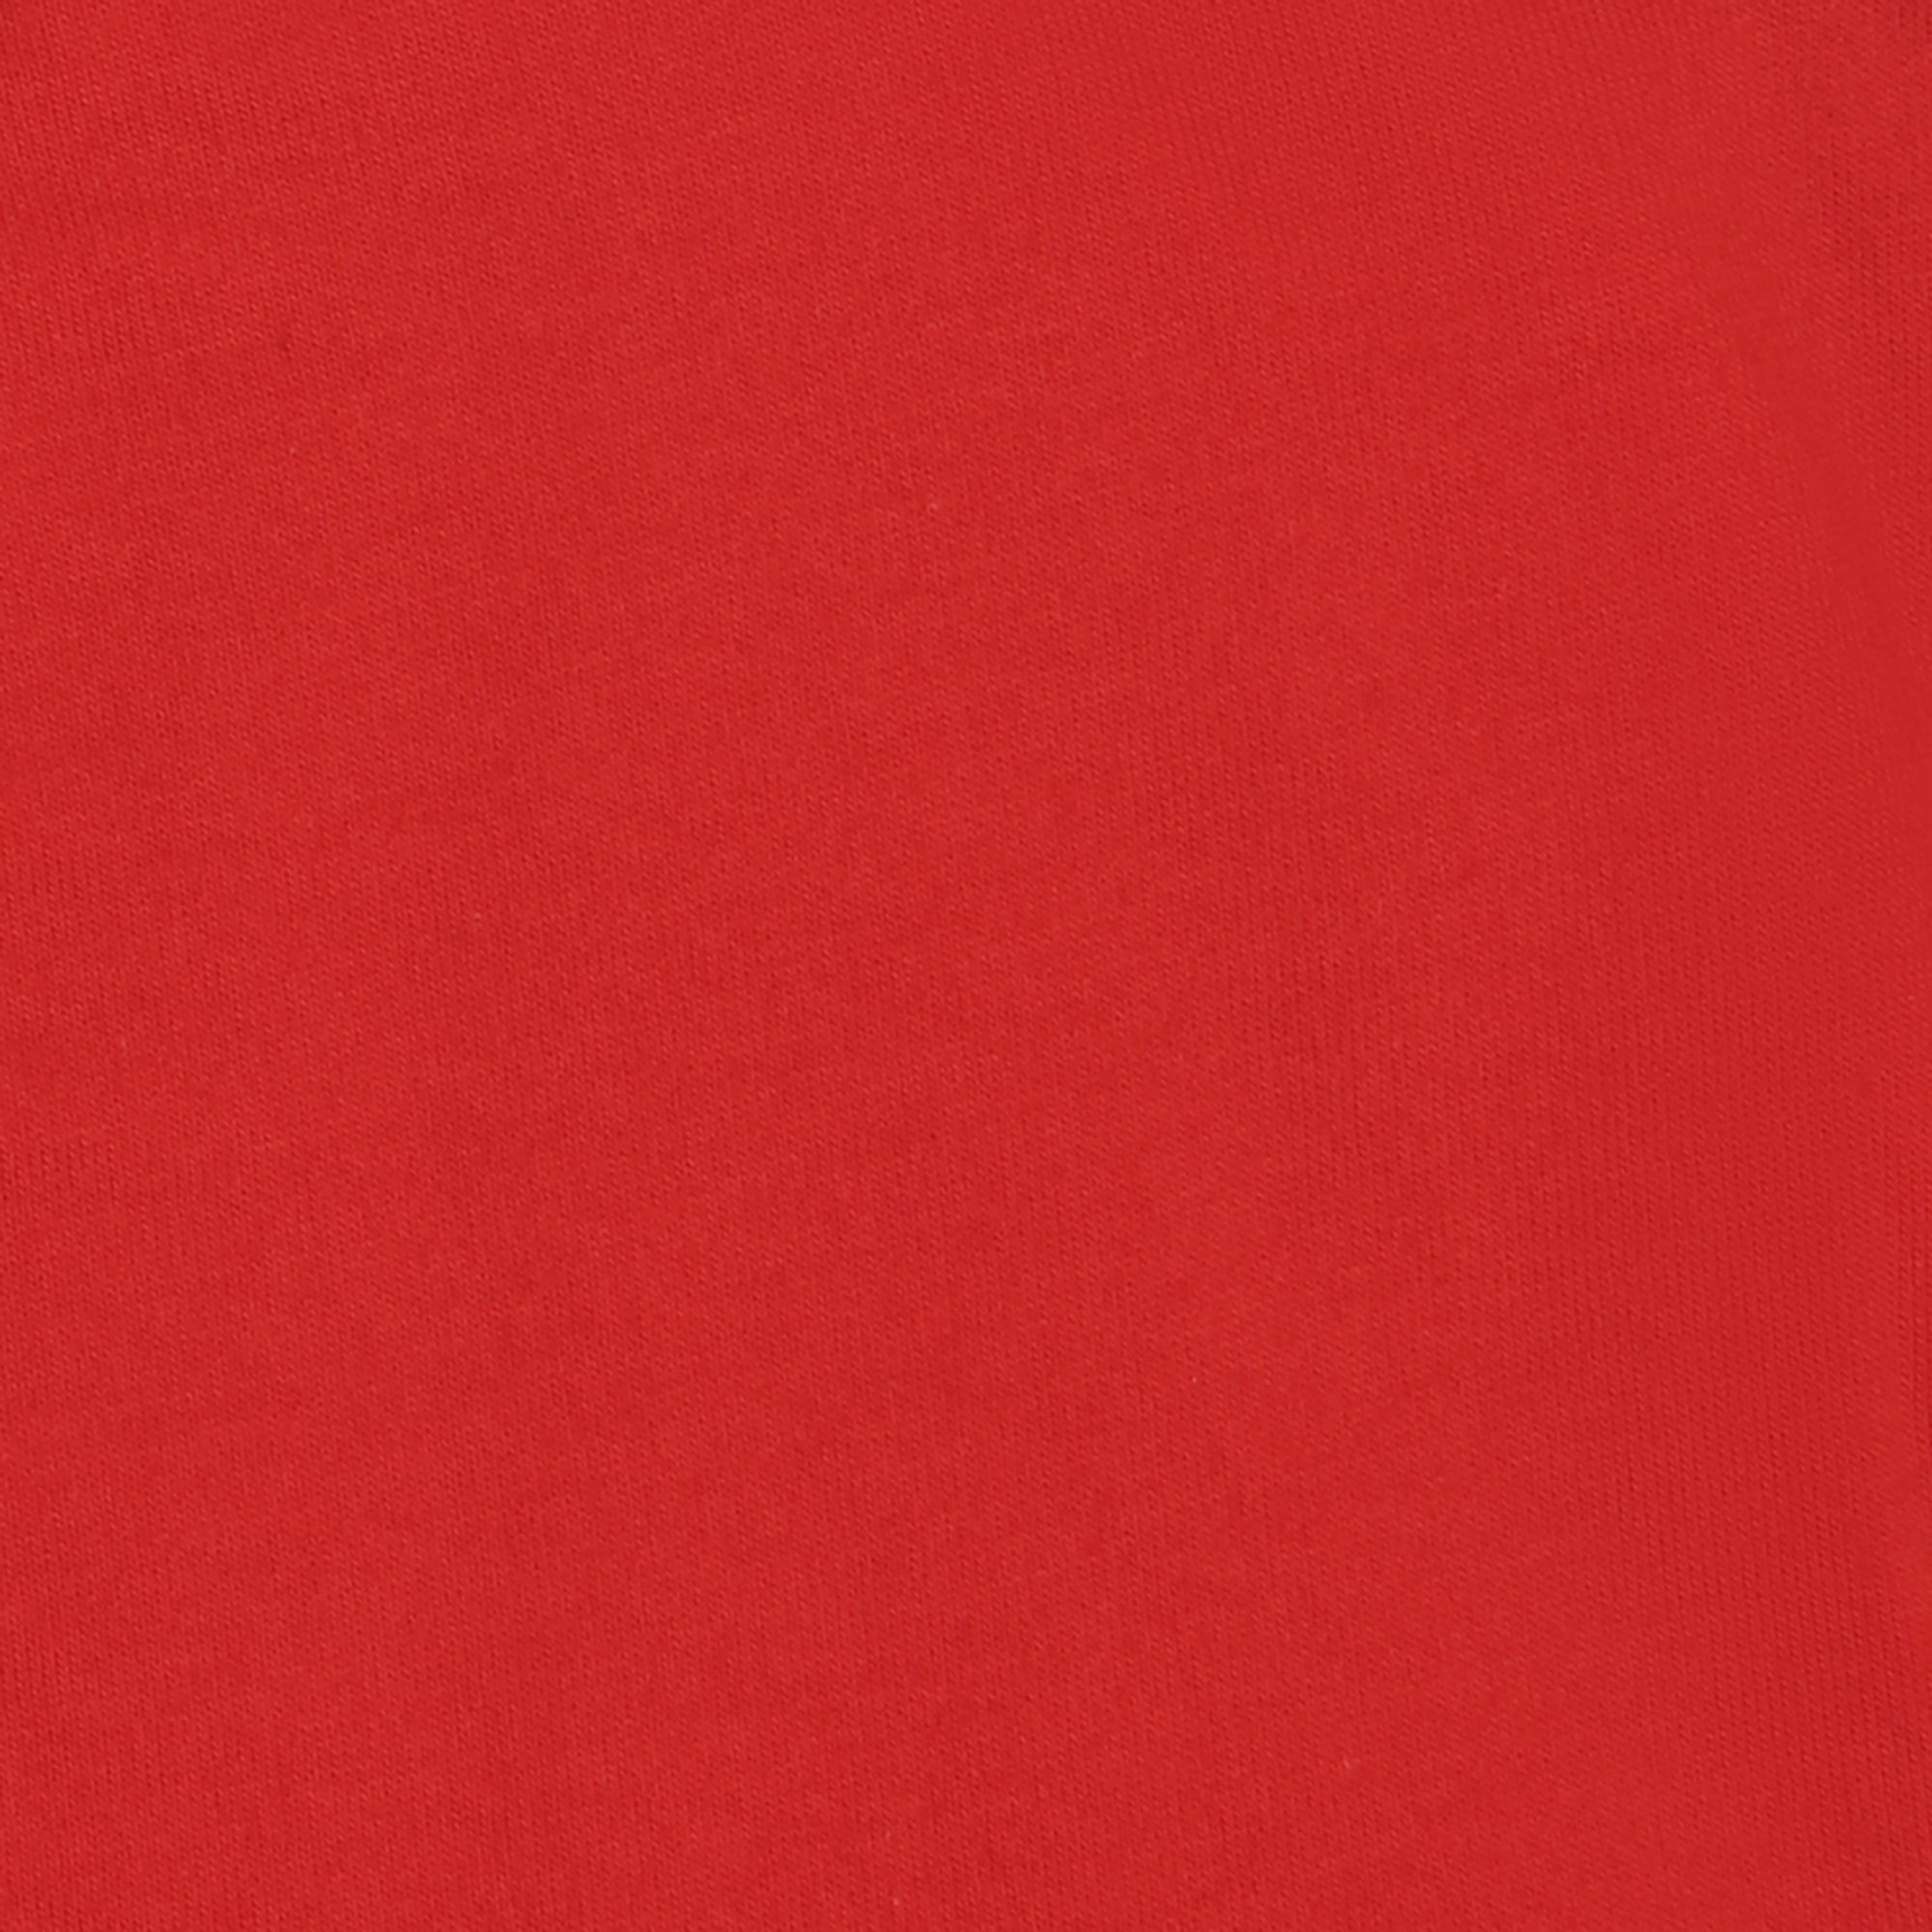 Мужская футболка Pantelemone MF-913 48 красная, цвет красный, размер 48 - фото 3